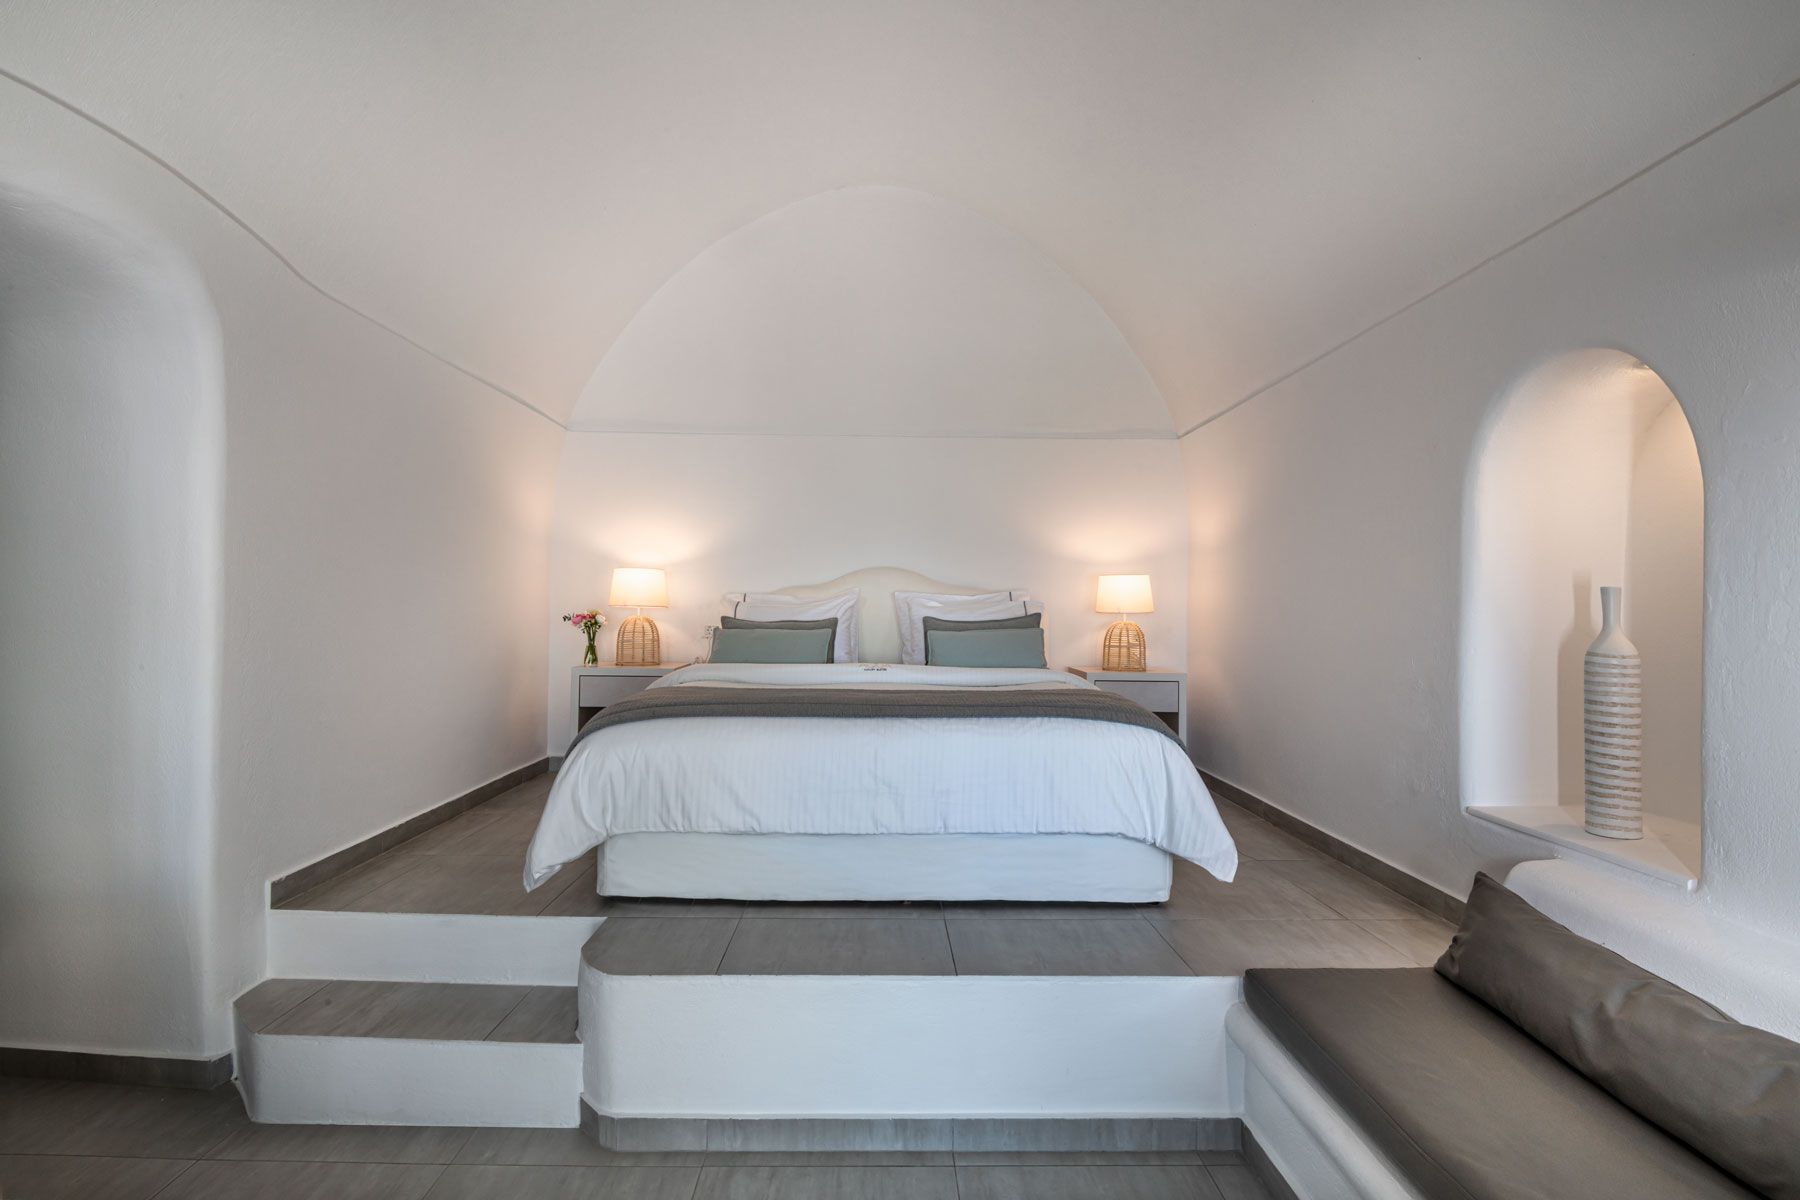 Aqua luxury suites in Santorini imerovigli, Interior design of luxury suites with private pool